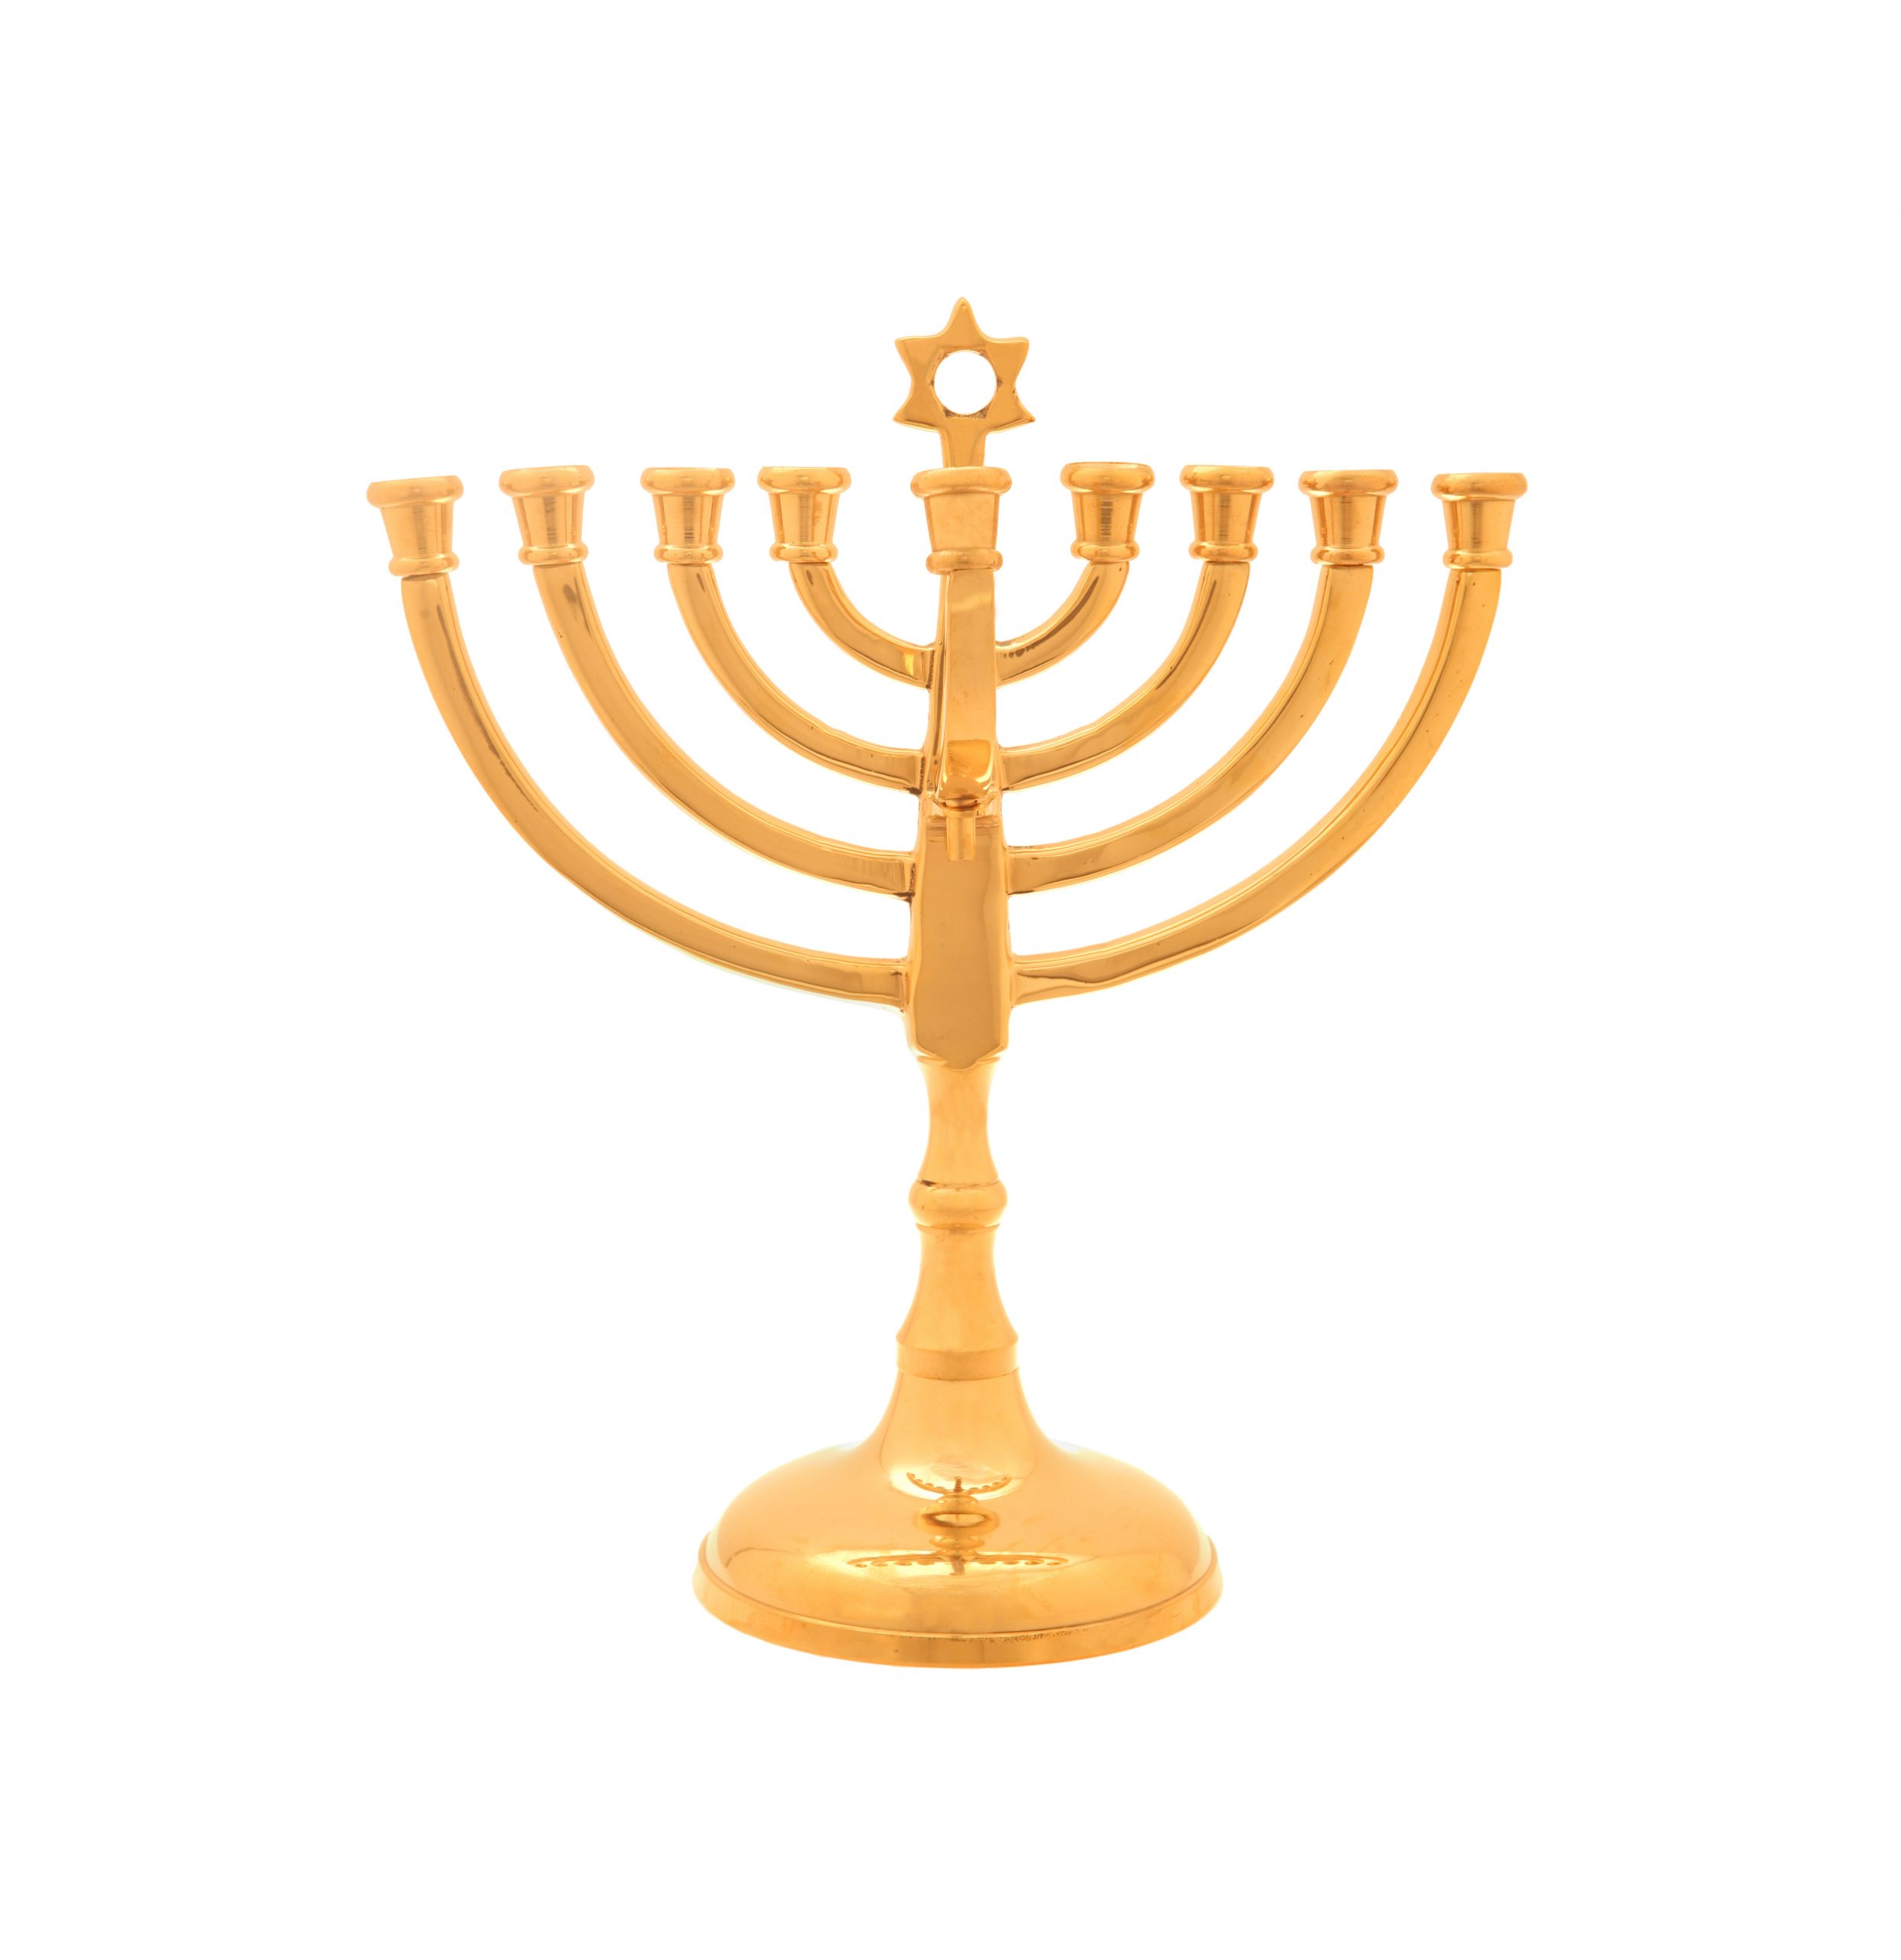 Hanukkah Lamp With A Modern Design (cast Brass)